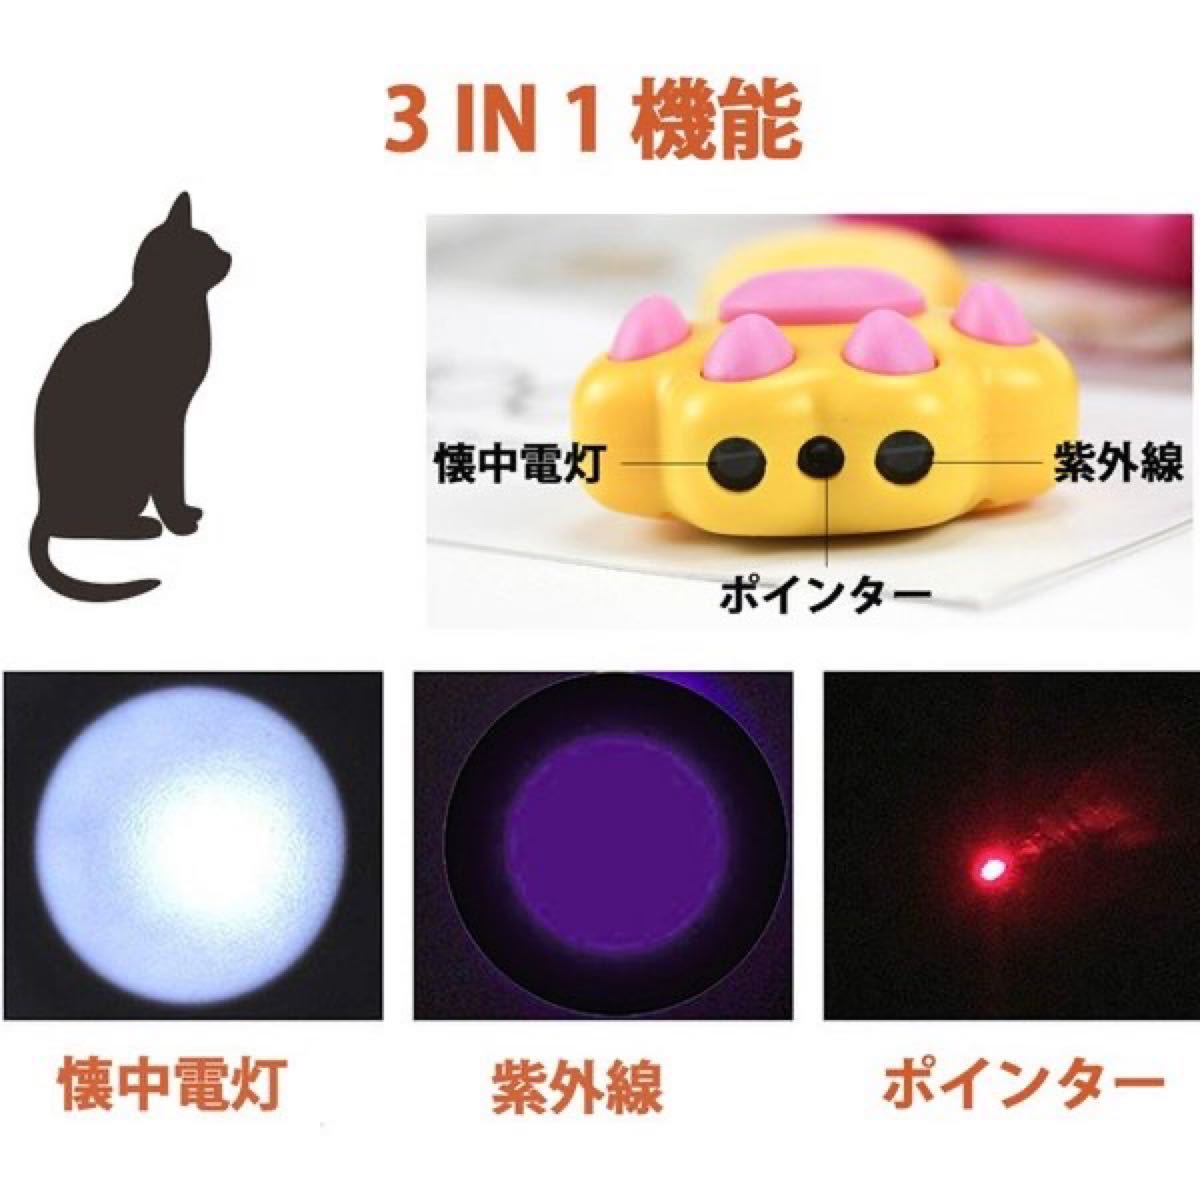 猫 おもちゃ ポインター 肉球型 レーザーポインター 懐中電灯付き 黒色